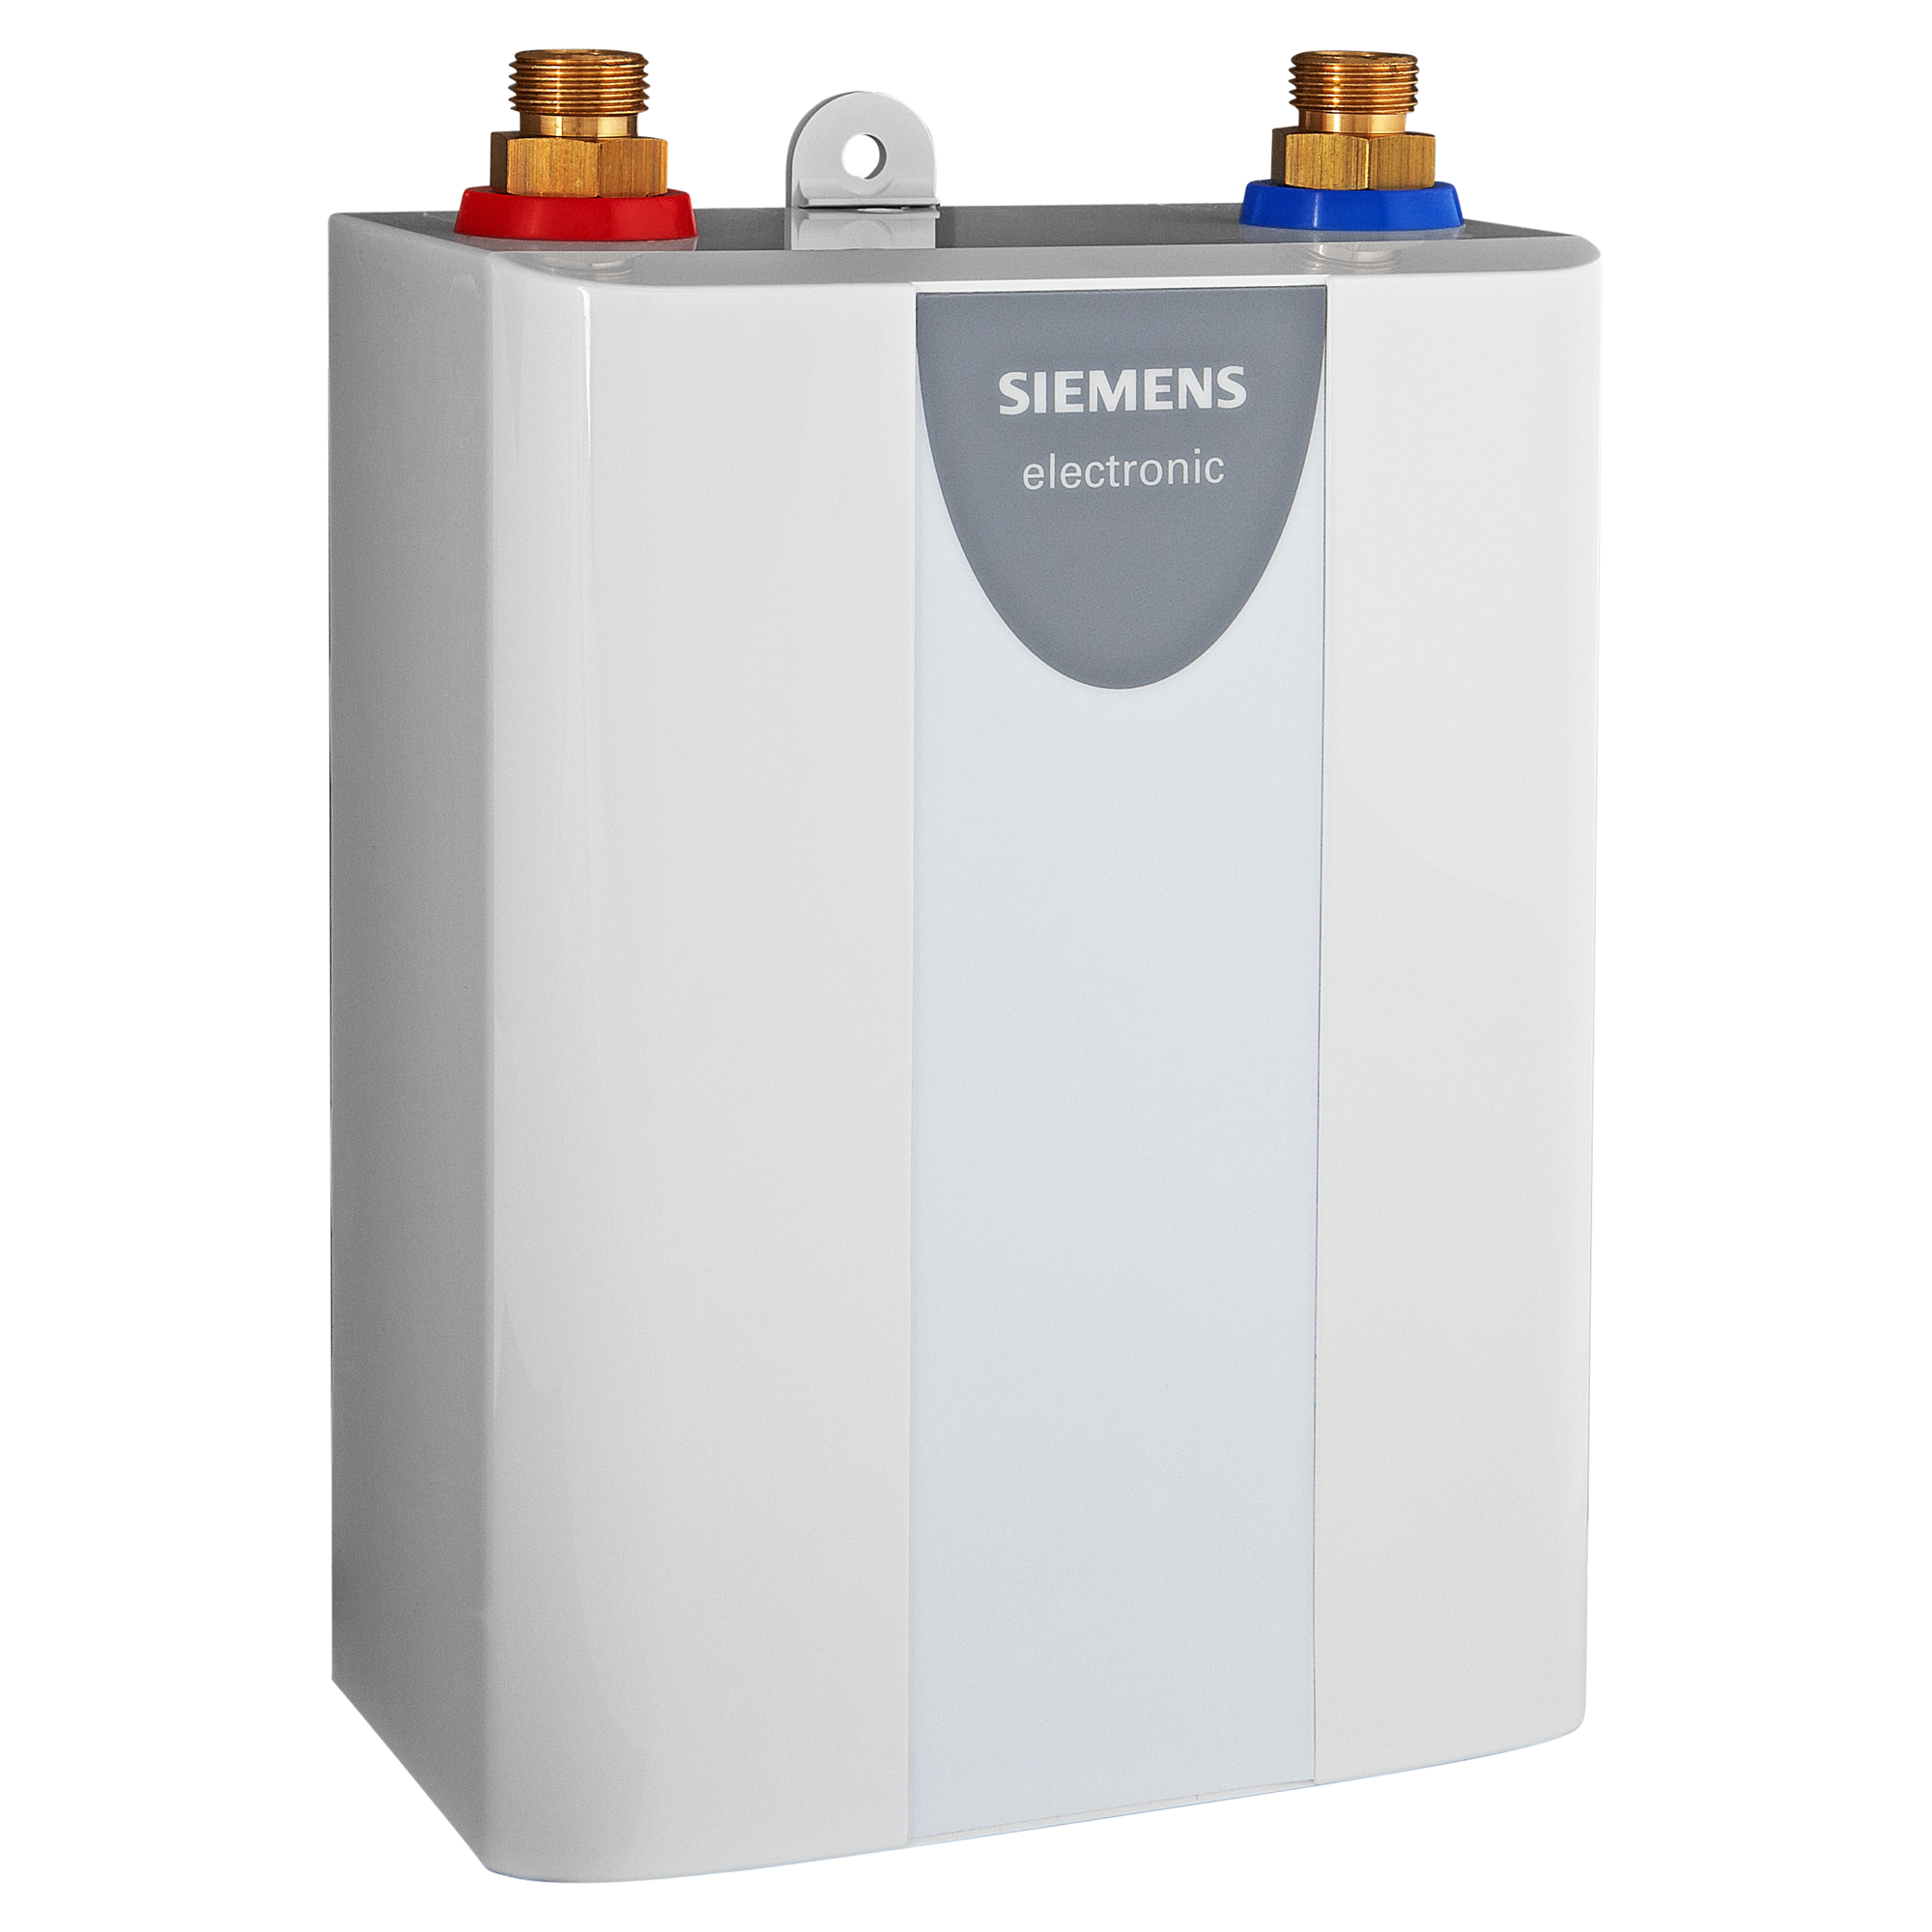 B-Ware Siemens Untertisch Kleindurchlauferhitzer Elektronisch 3,6 KW  N-909